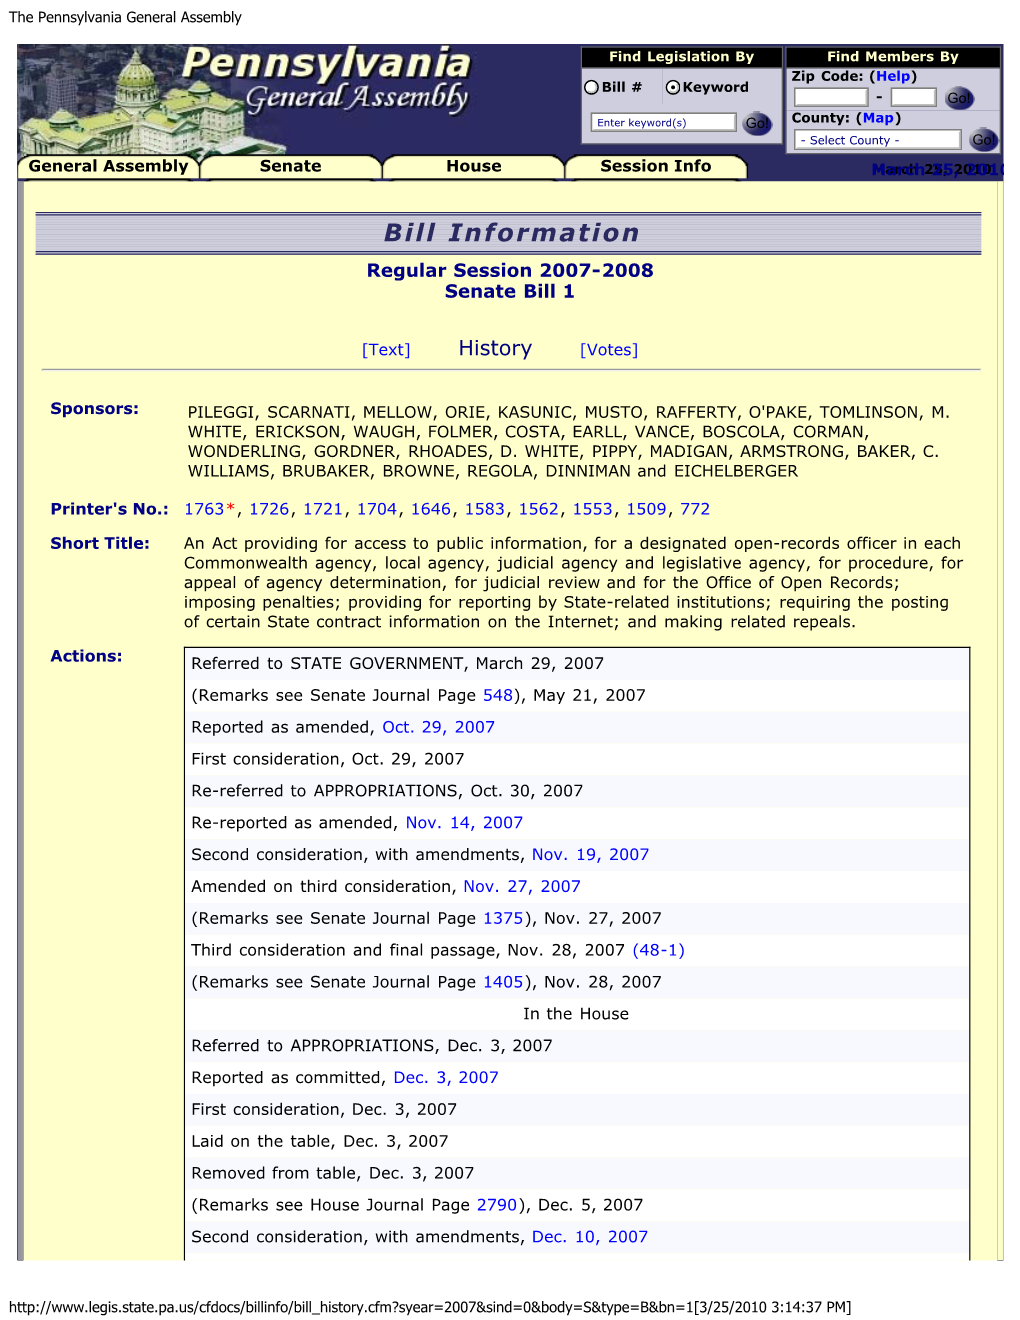 Bill Information Regular Session 2007-2008 Senate Bill 1